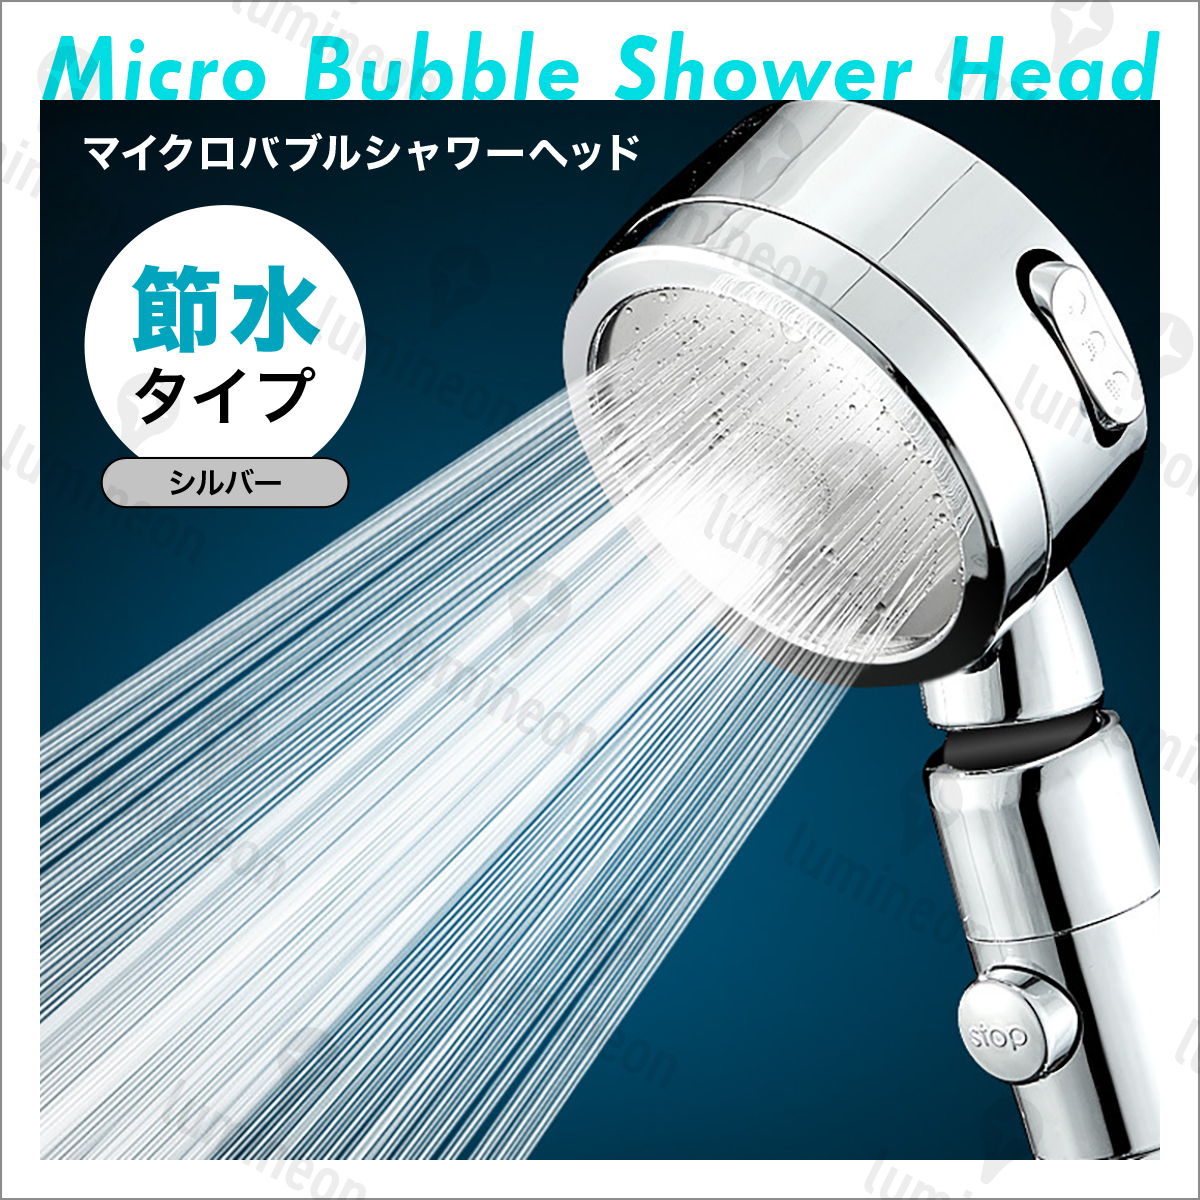 シャワー ヘッド 塩素 除去 節水 おすすめ 高水圧 ランキング 最強 水圧 強い 人気 お風呂 手元スイッチ 角度調整 3段階モード g084a1 3_画像1